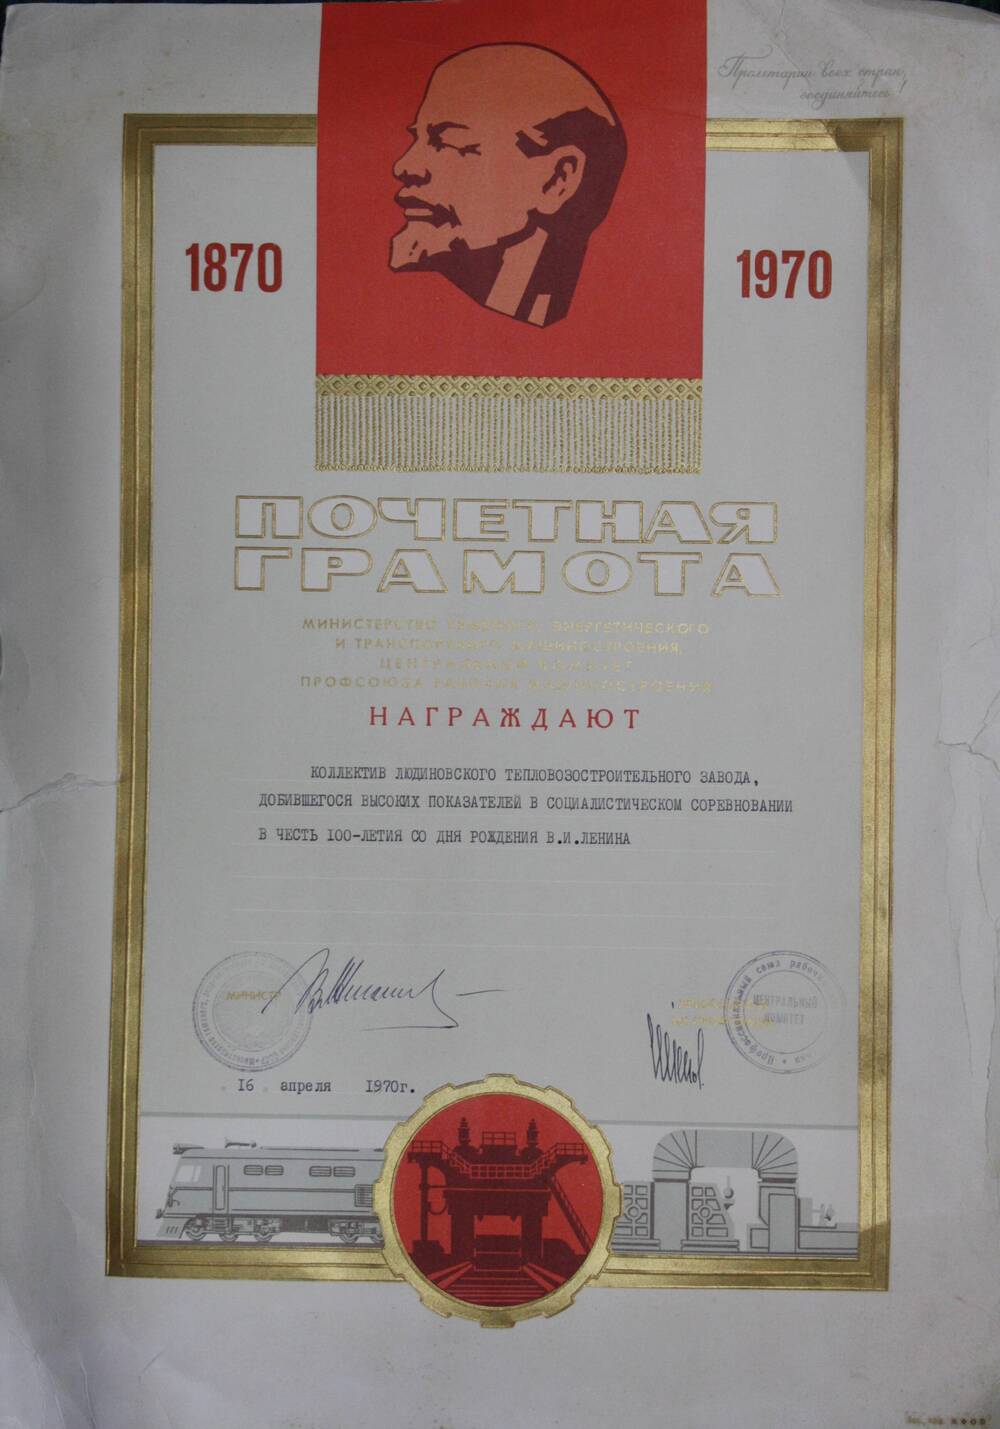 Почетная грамота Минтяжэнергомаш, ЦК профсоюза рабочих машиностроения коллективу ЛТЗ, добившемуся высоких показателей в социалистическом соревновании в честь 100-летия со дня рождения В.И.Ленина